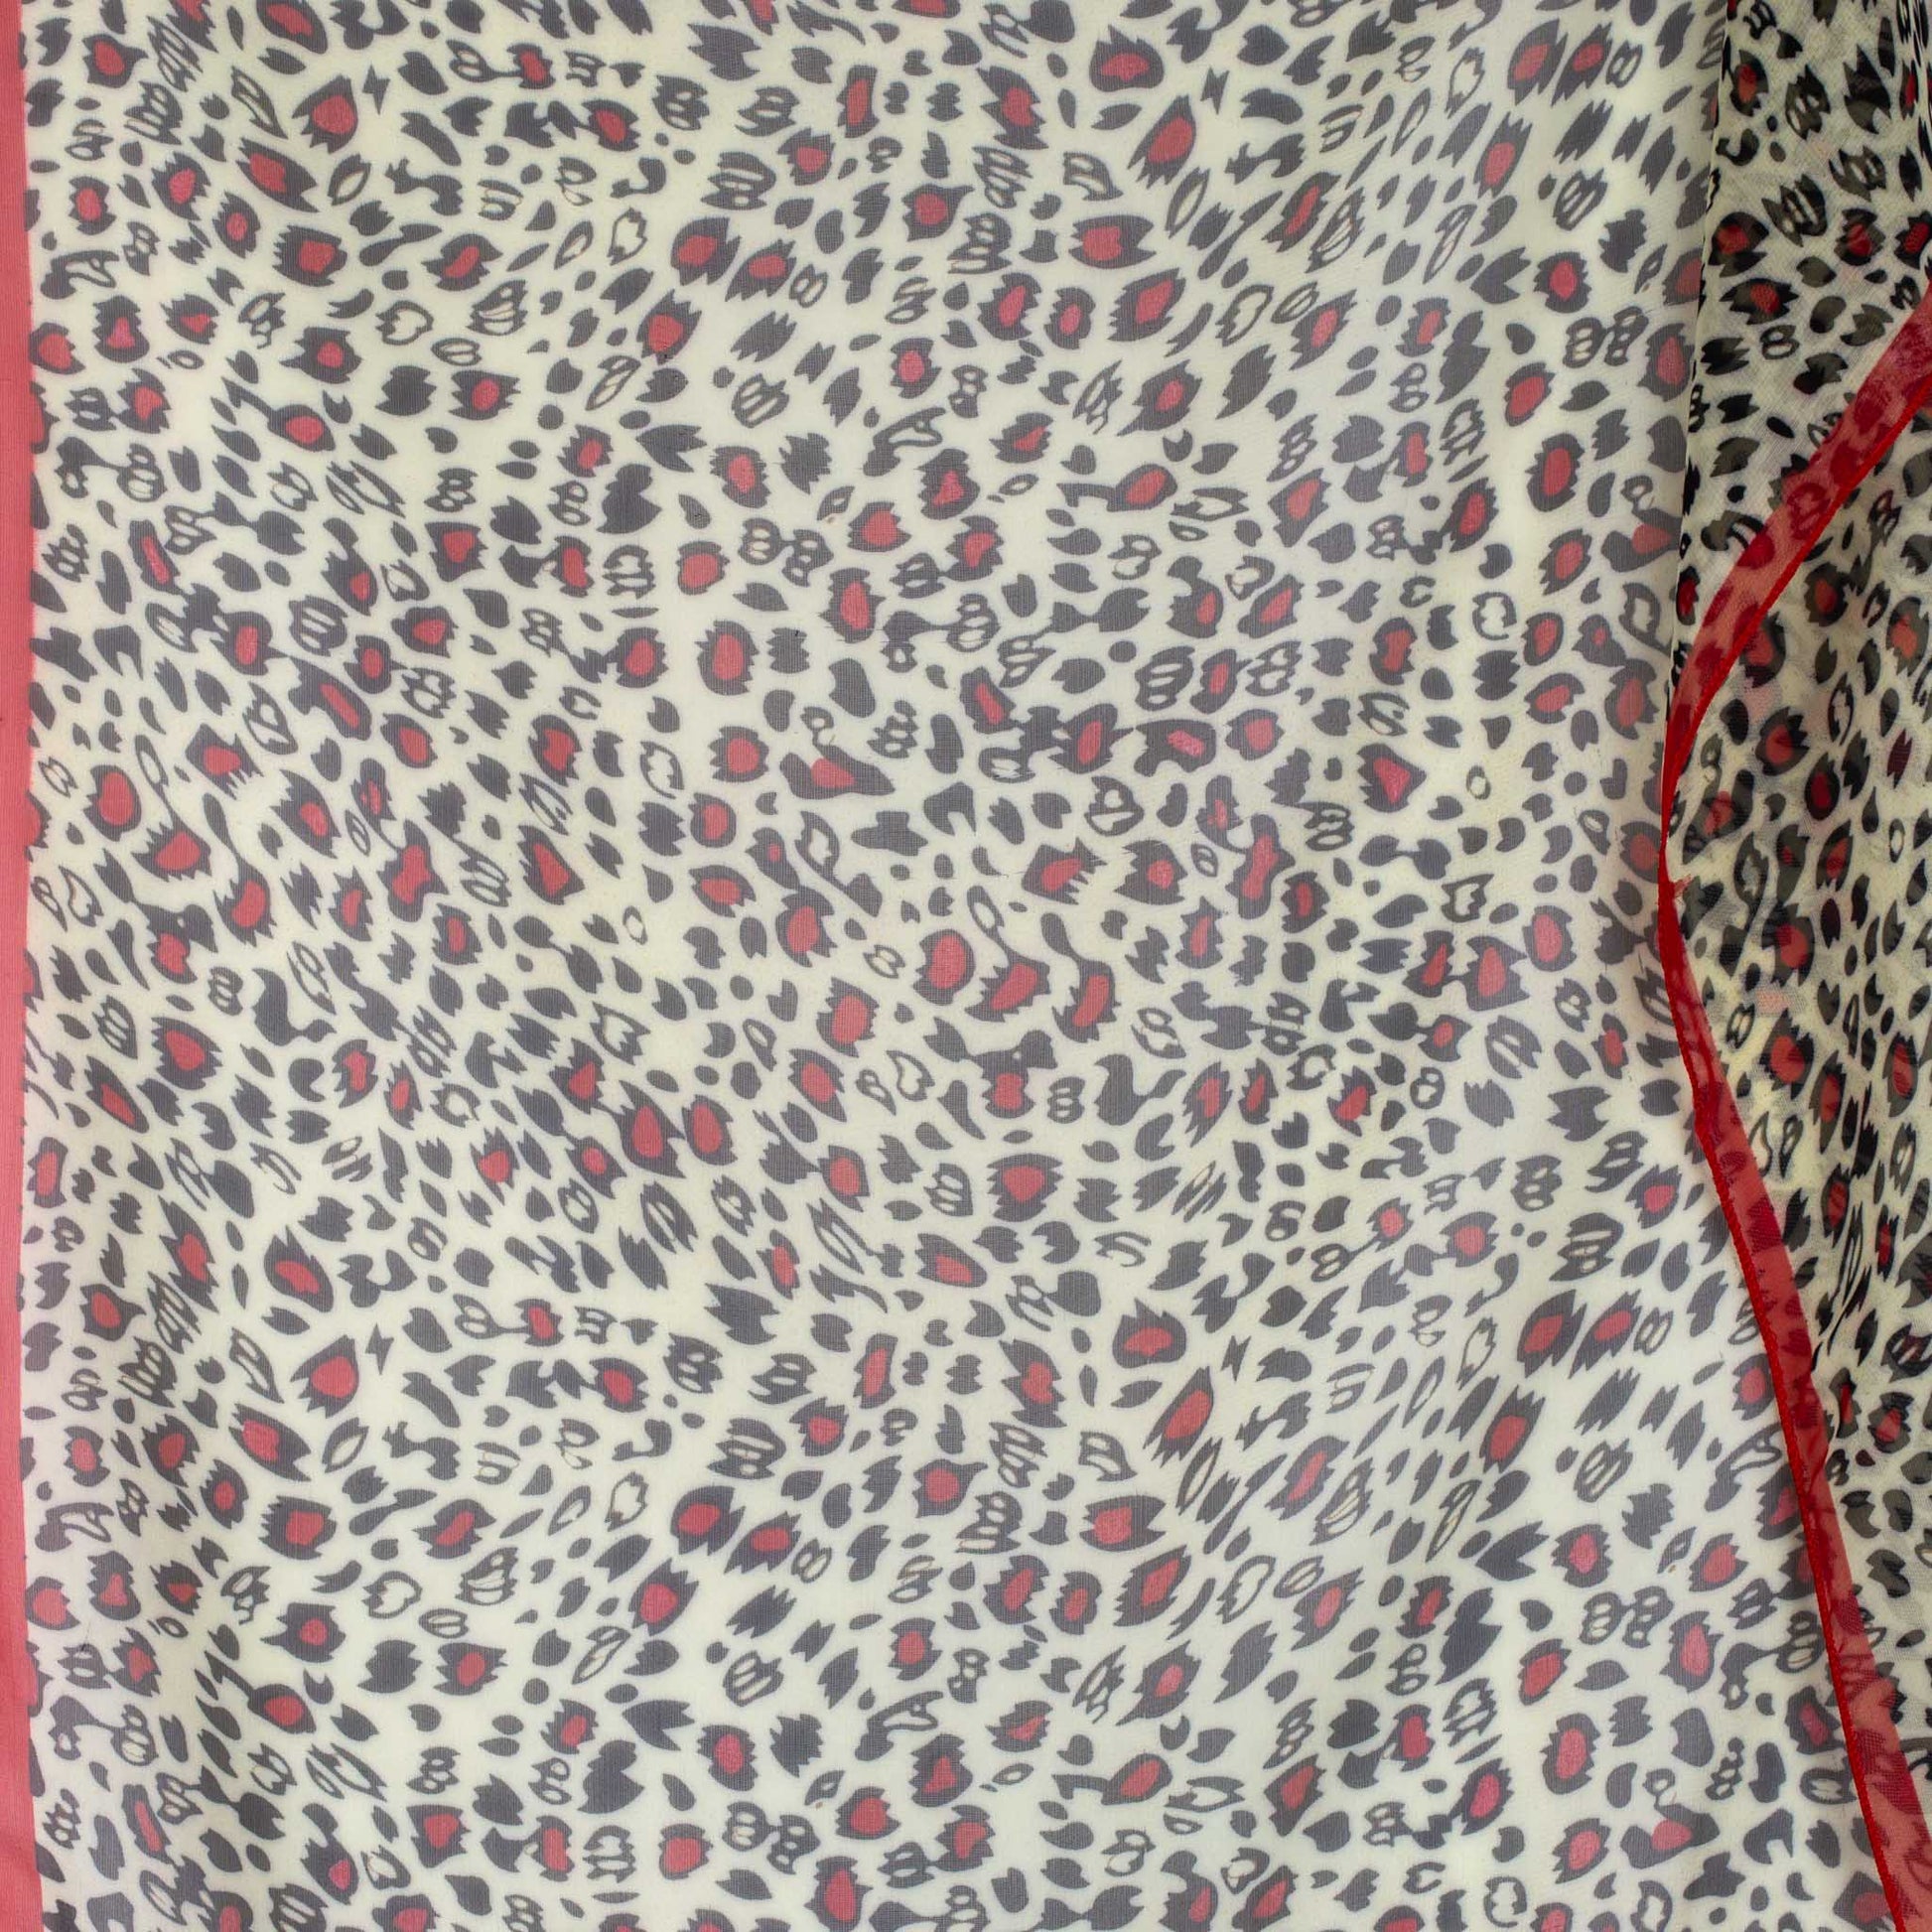 Eșarfă damă din mătase cu animal print, 65 x 65 cm - Roșu, Bej, Maro